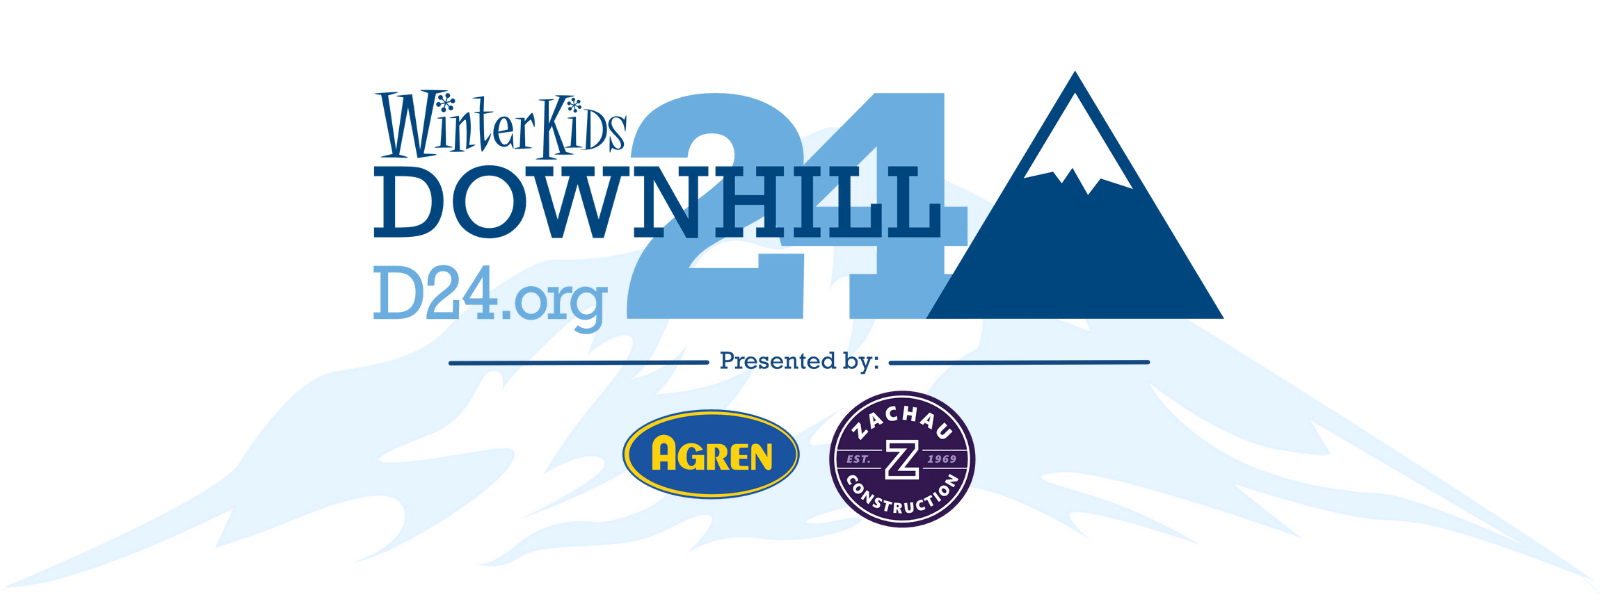 D24 logo & mountain